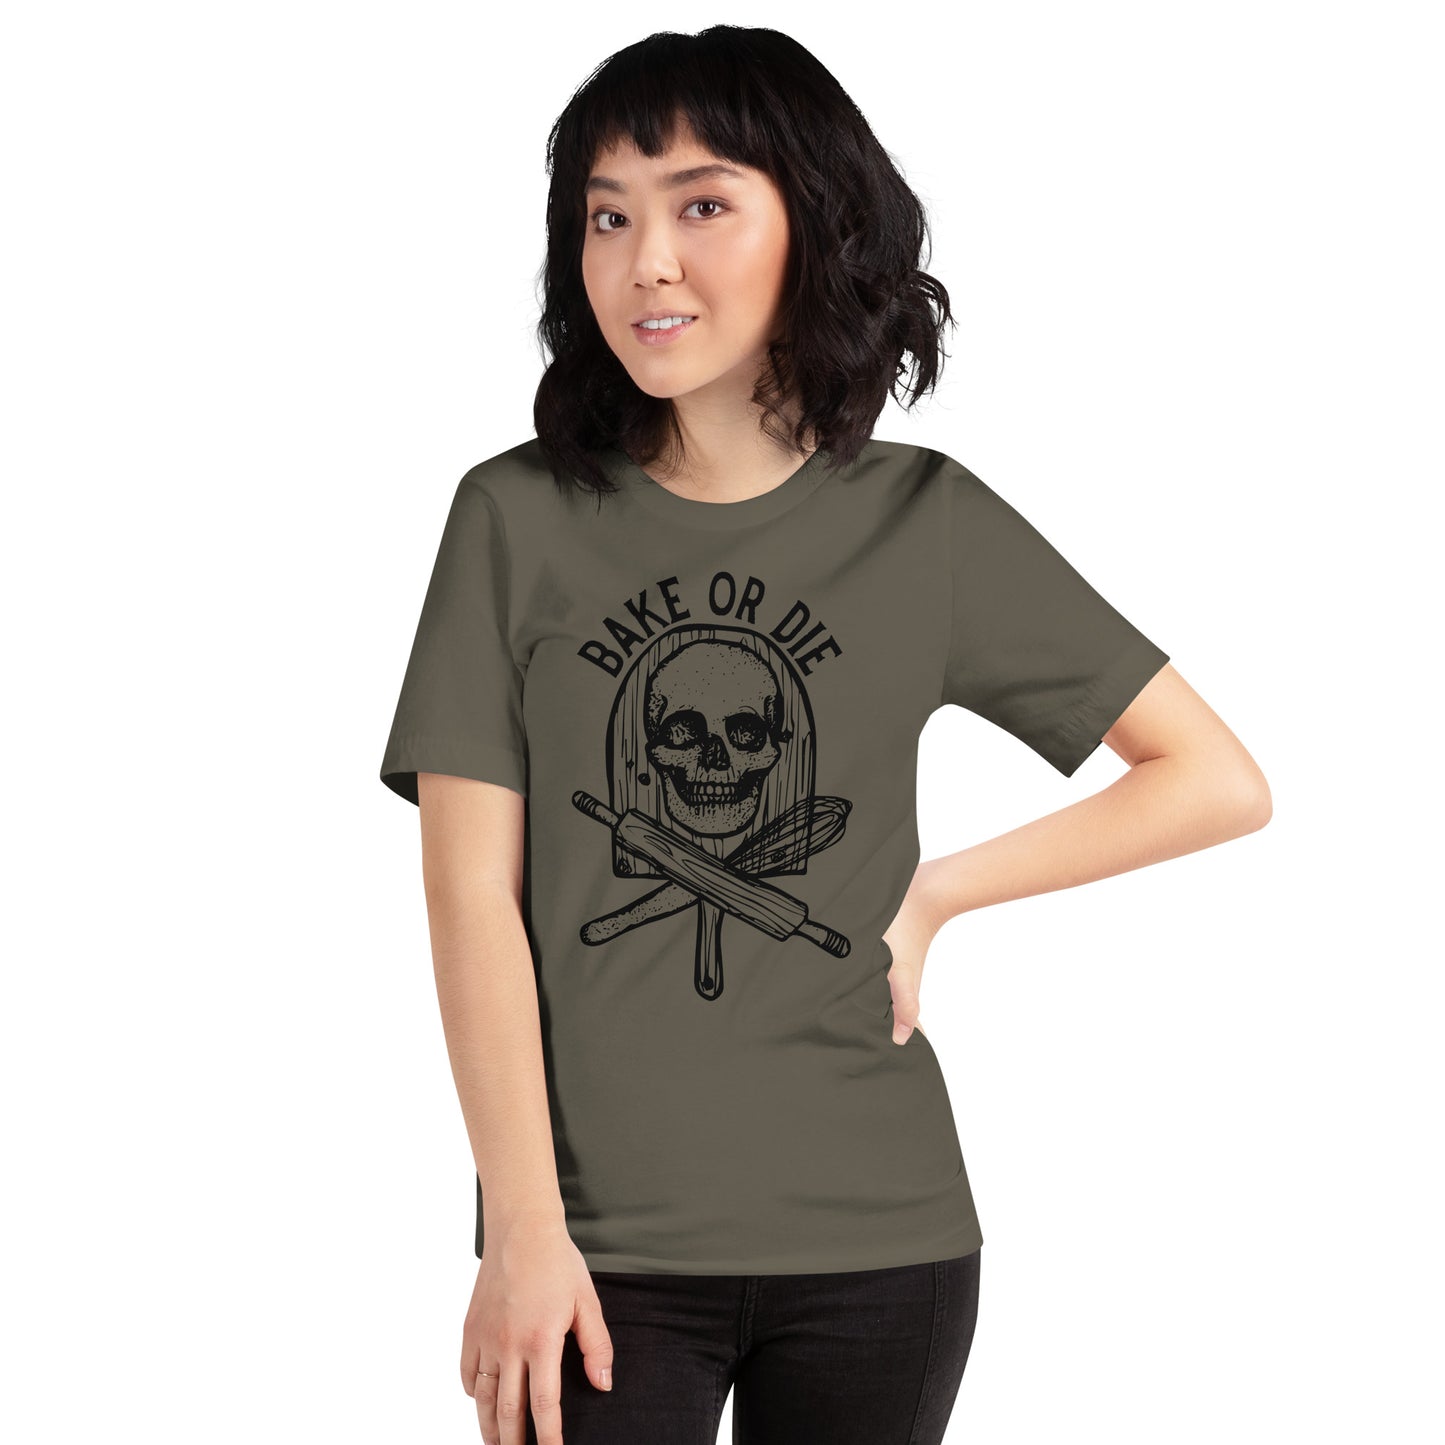 BellavanceInk: Bake Or Die Skull And Crossbones Short Sleeve T-Shirt